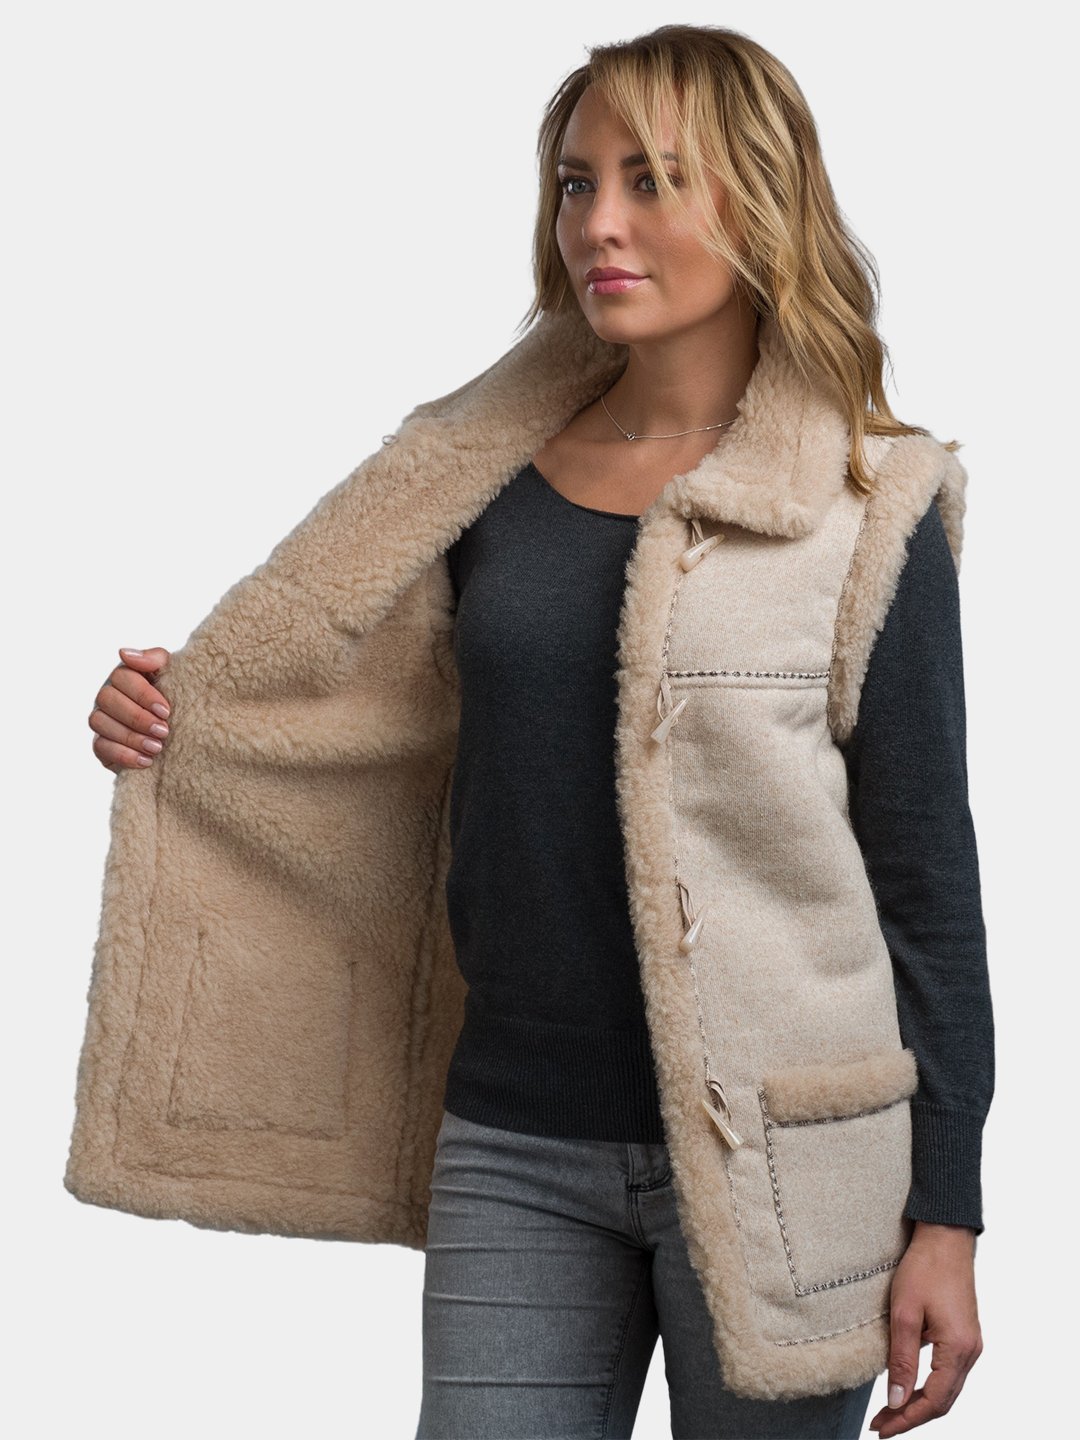 Выкройки женских курток и ветровок: купить, скачать готовую выкройку куртки